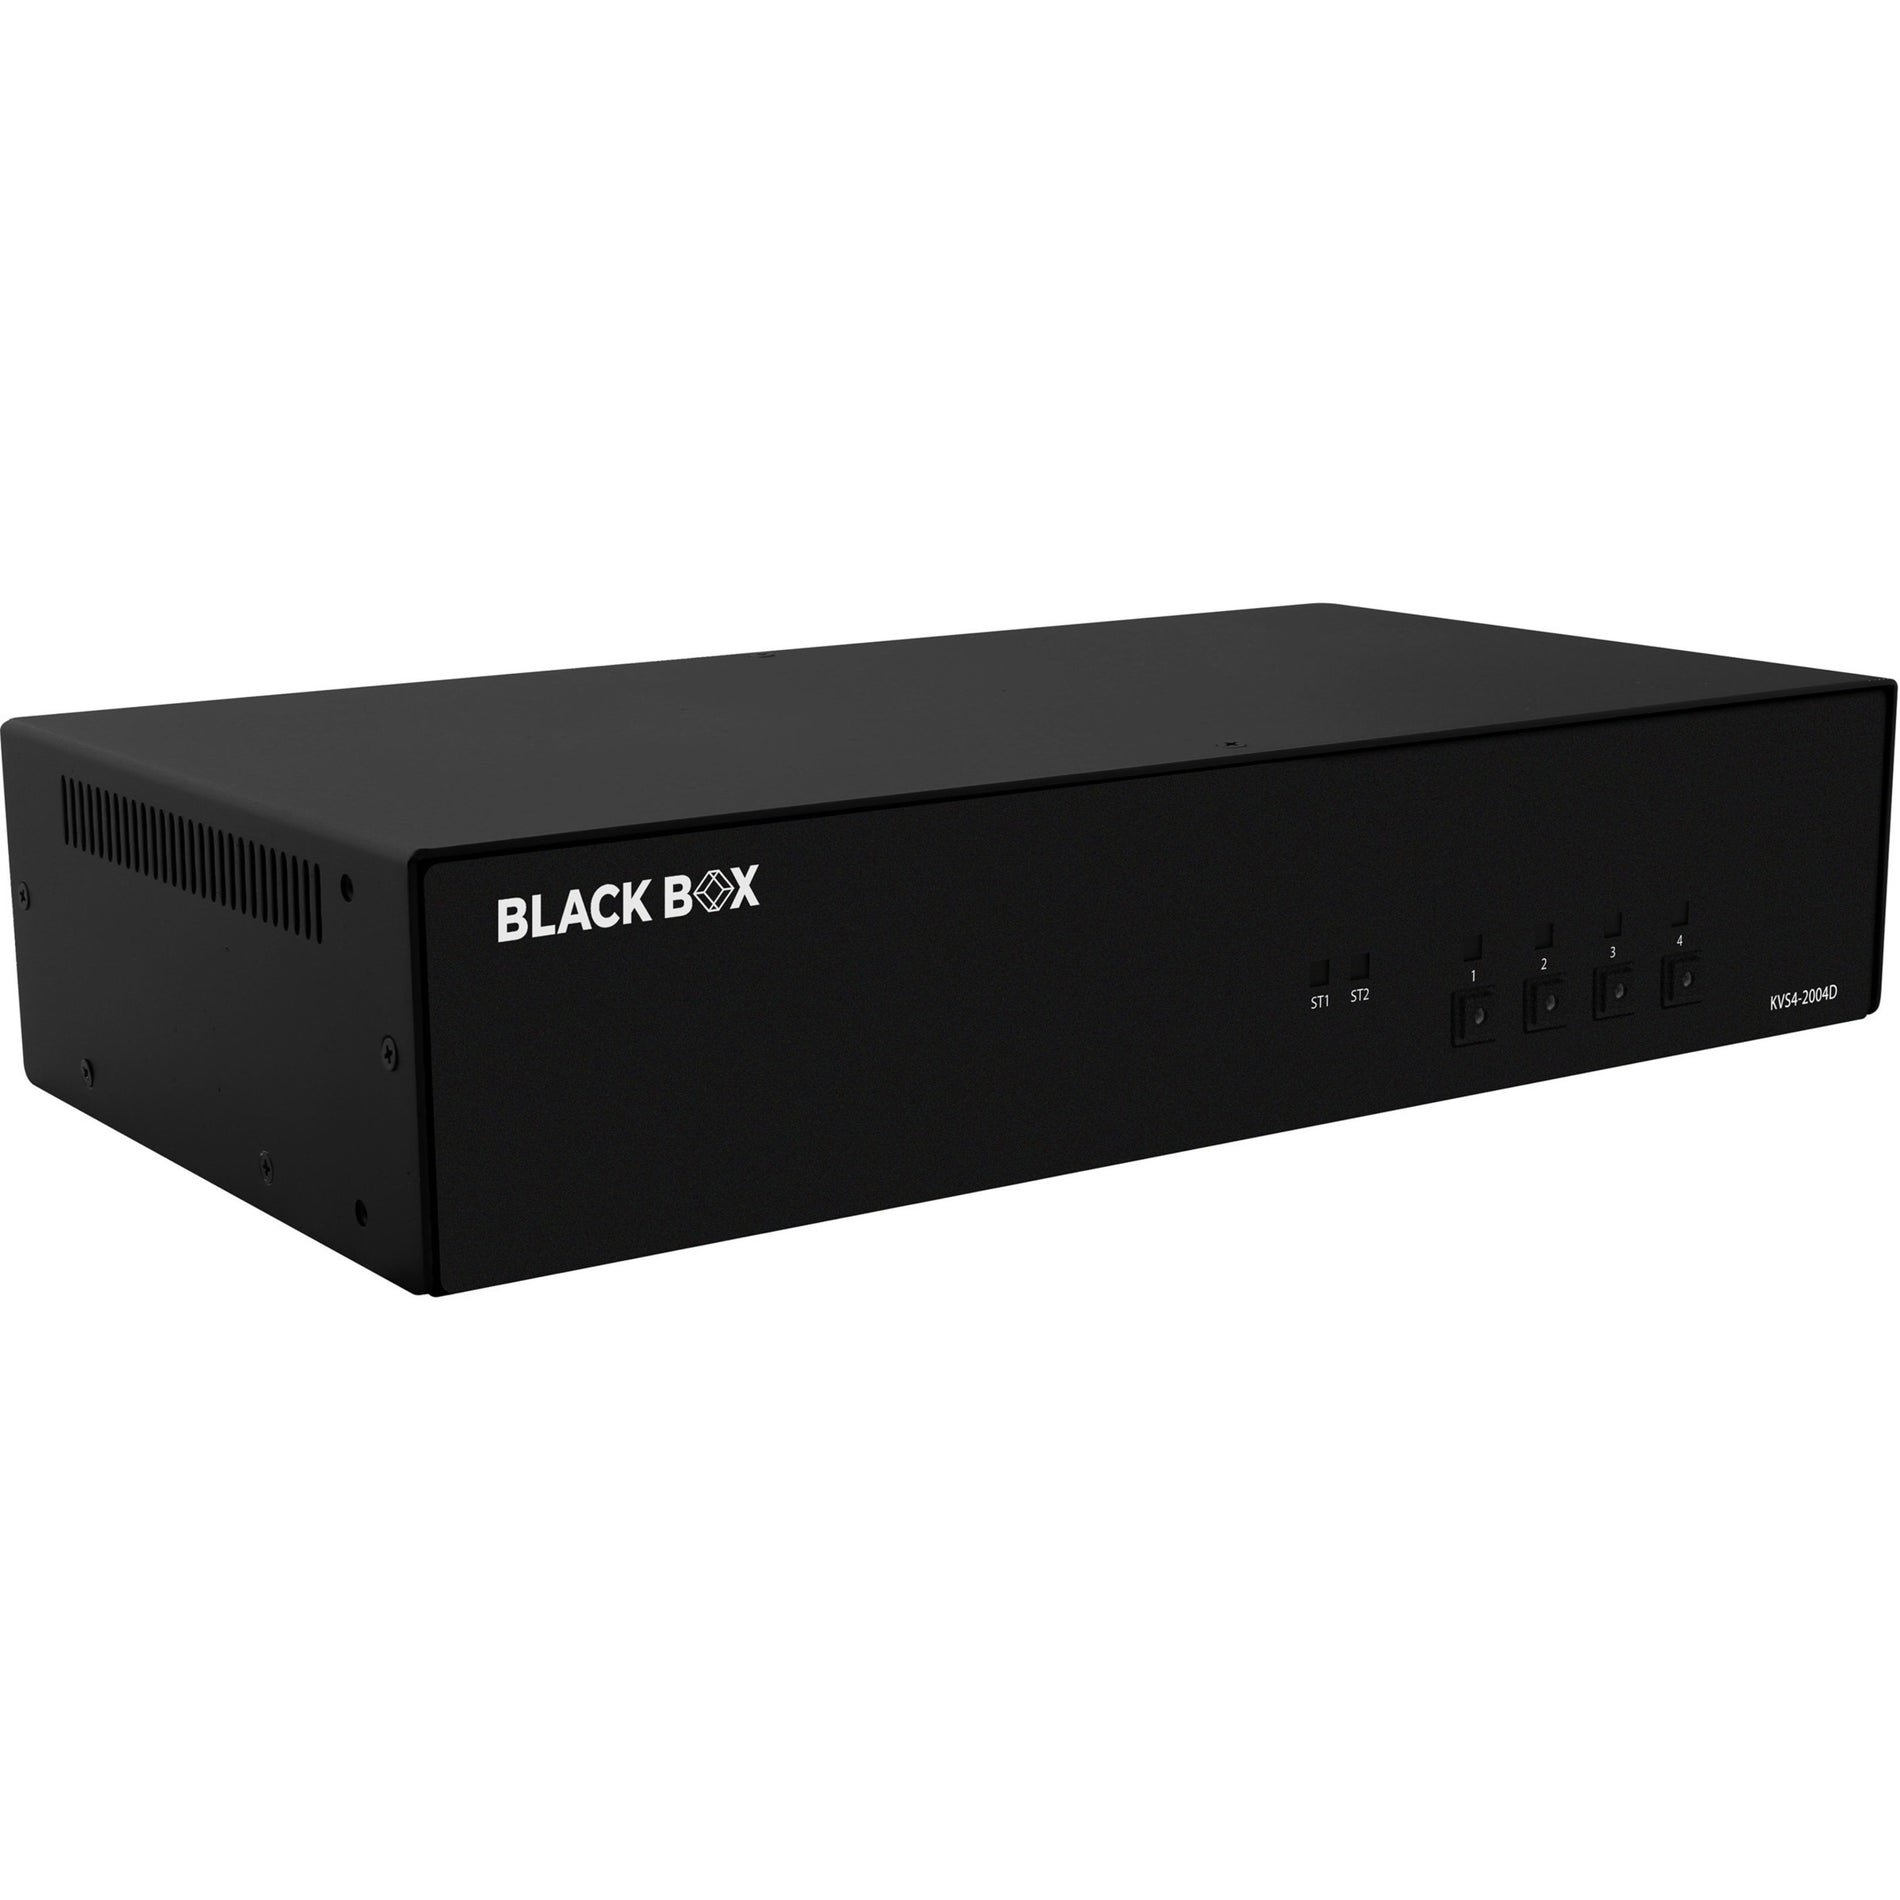 Black Box KVS4-2004D Secure KVM Switch - DVI-I, 10 DVI Ports, 6 USB Ports, TAA Compliant